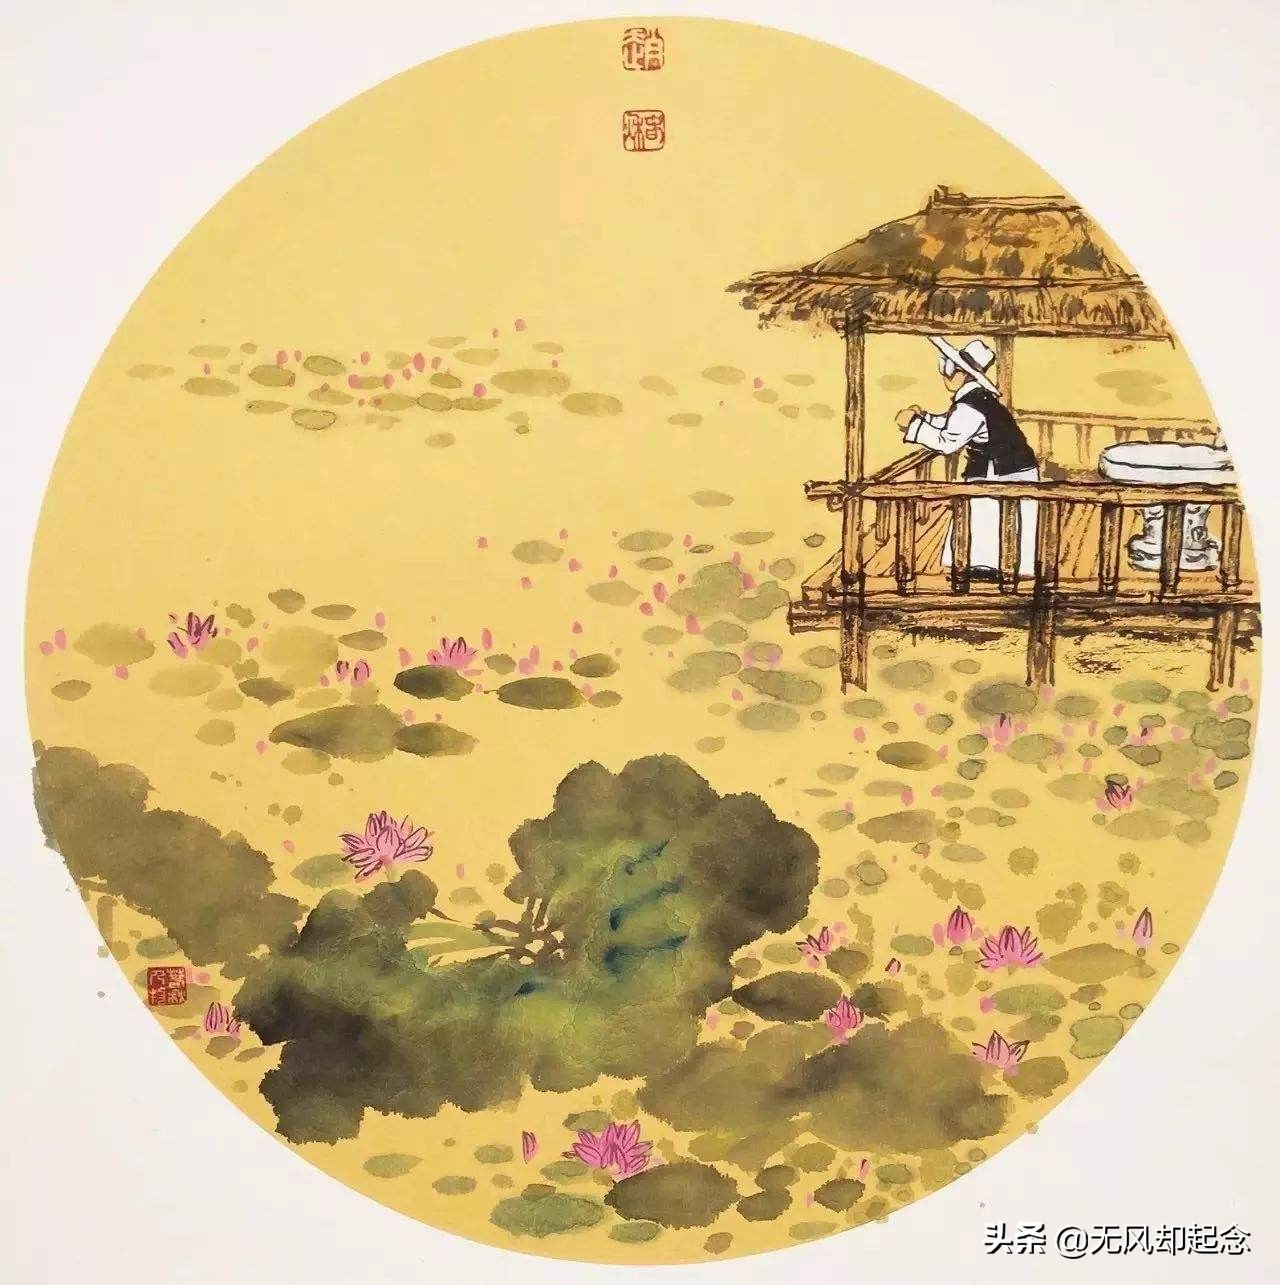 中国古代第一奇诗，顺读是爱情诗，倒读则是亲情诗，都很感人肺腑